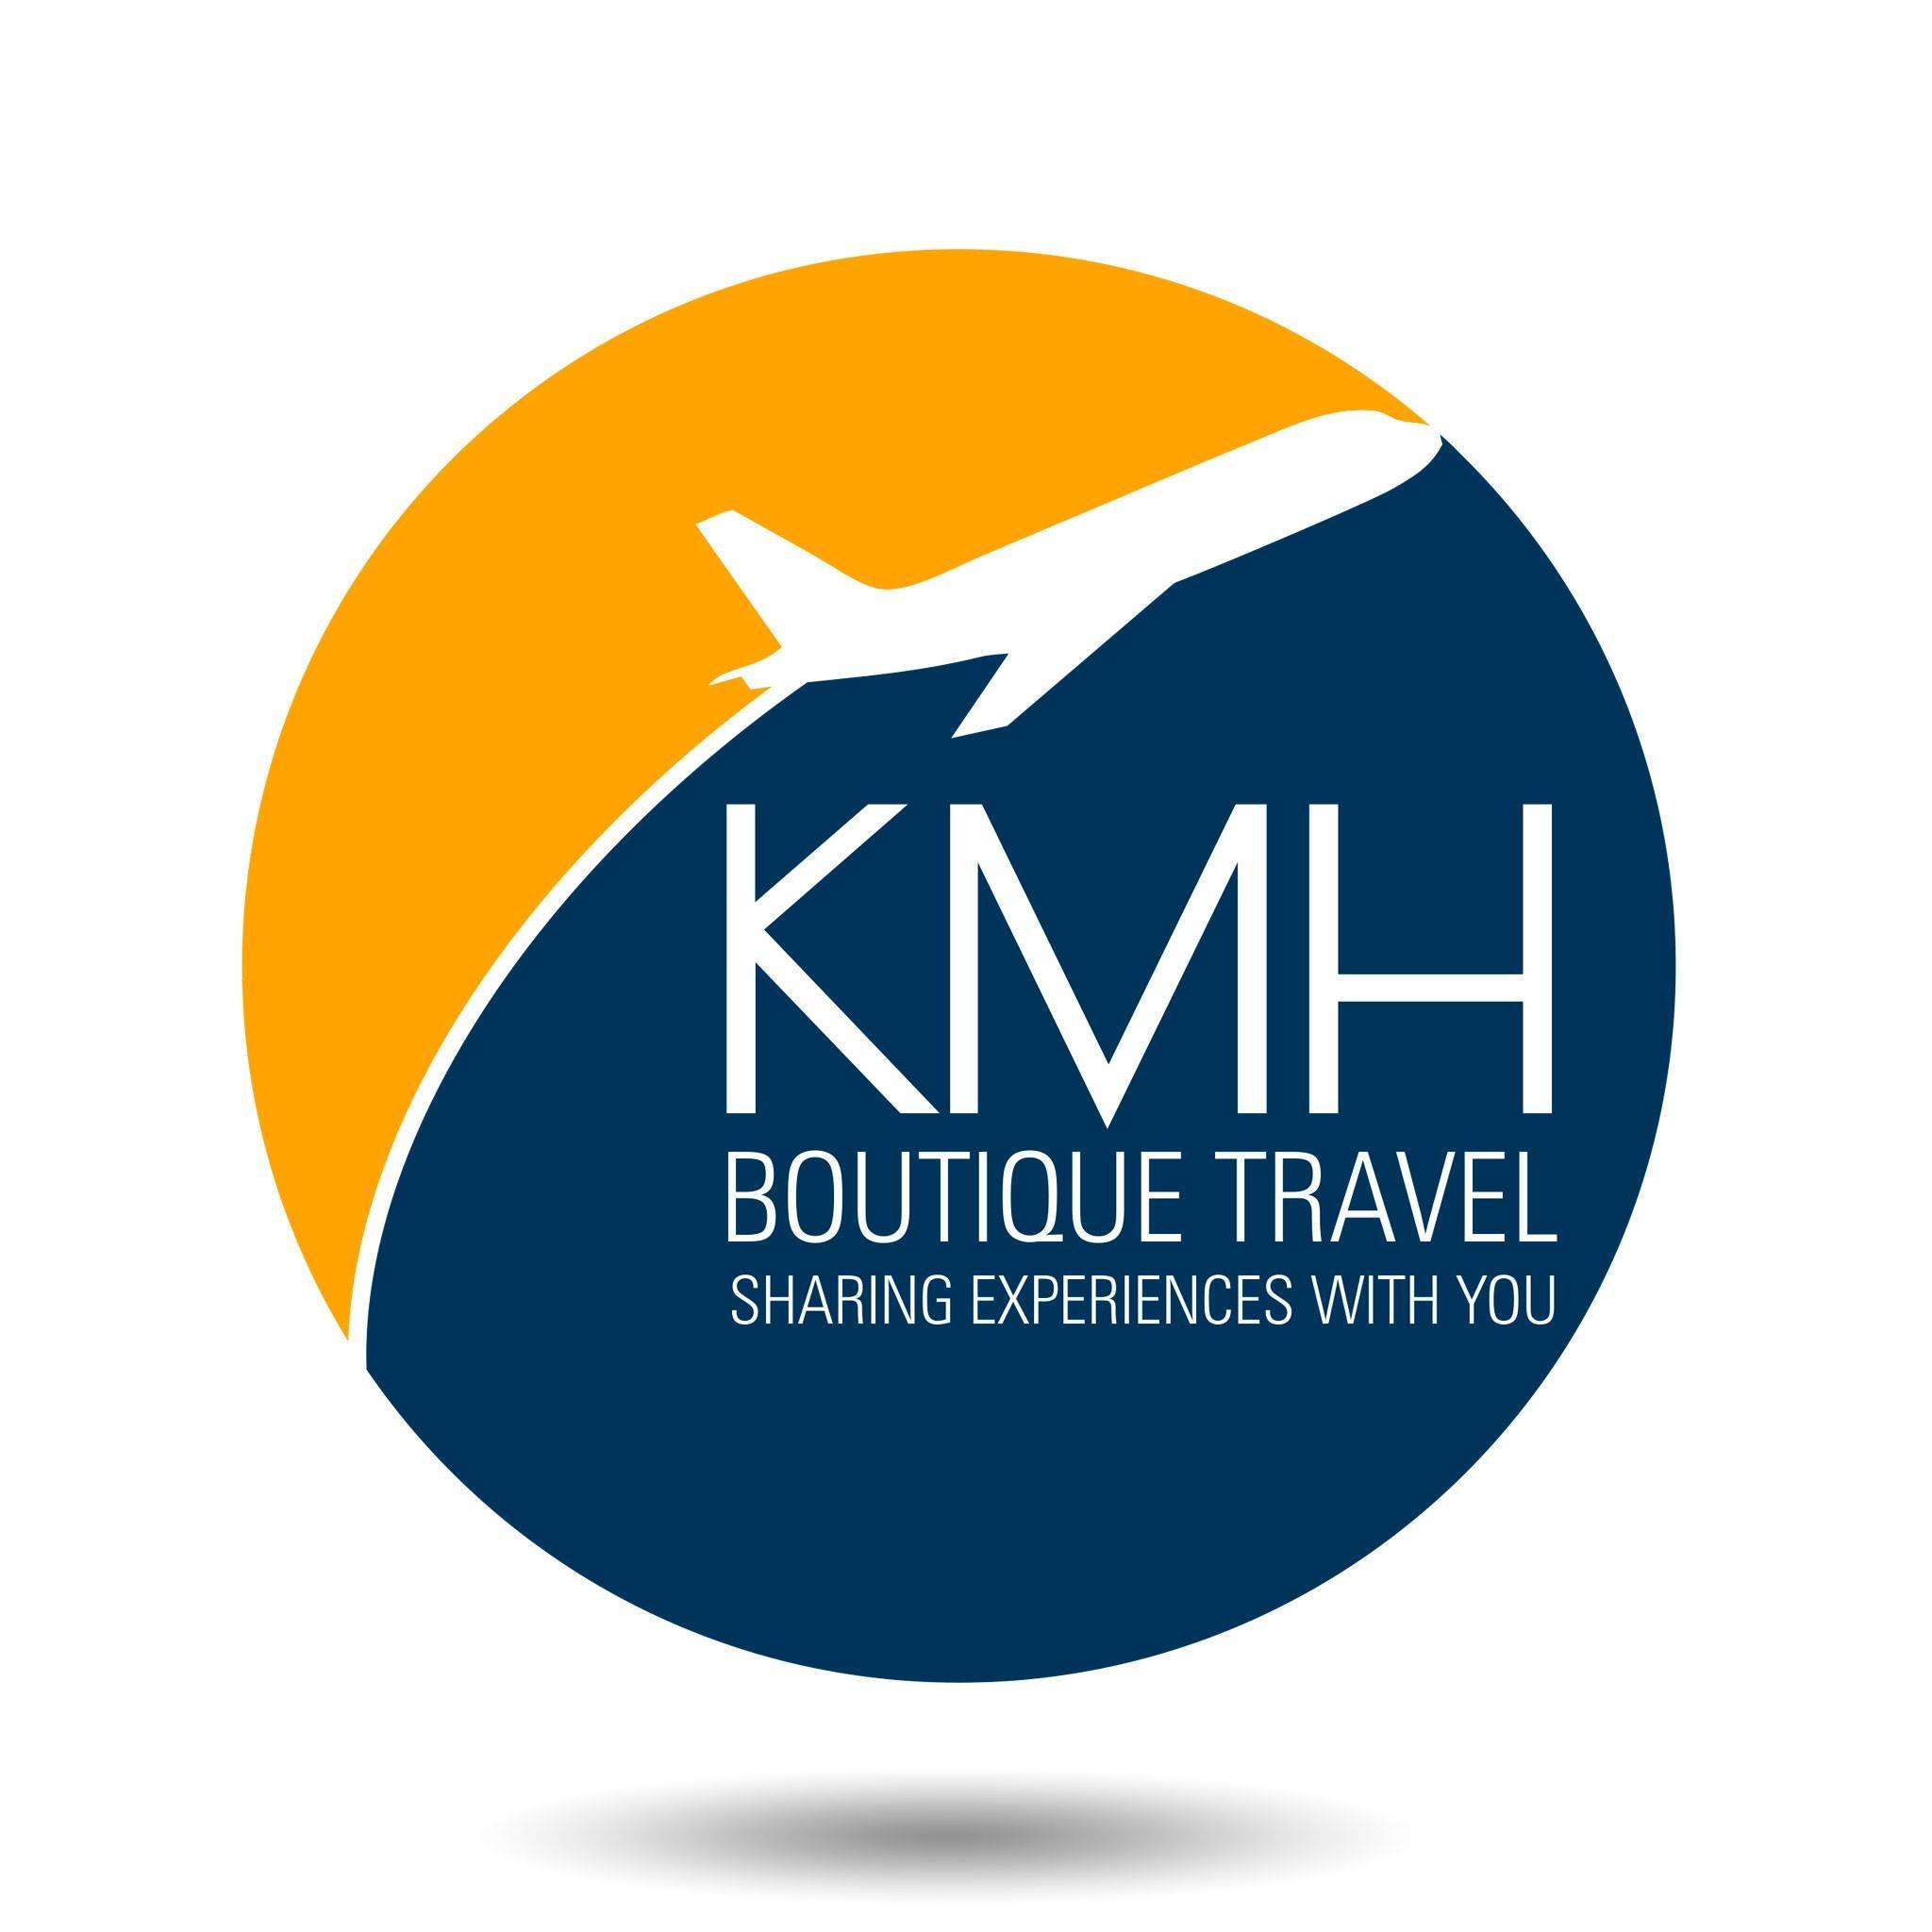 KMH Boutique Travel